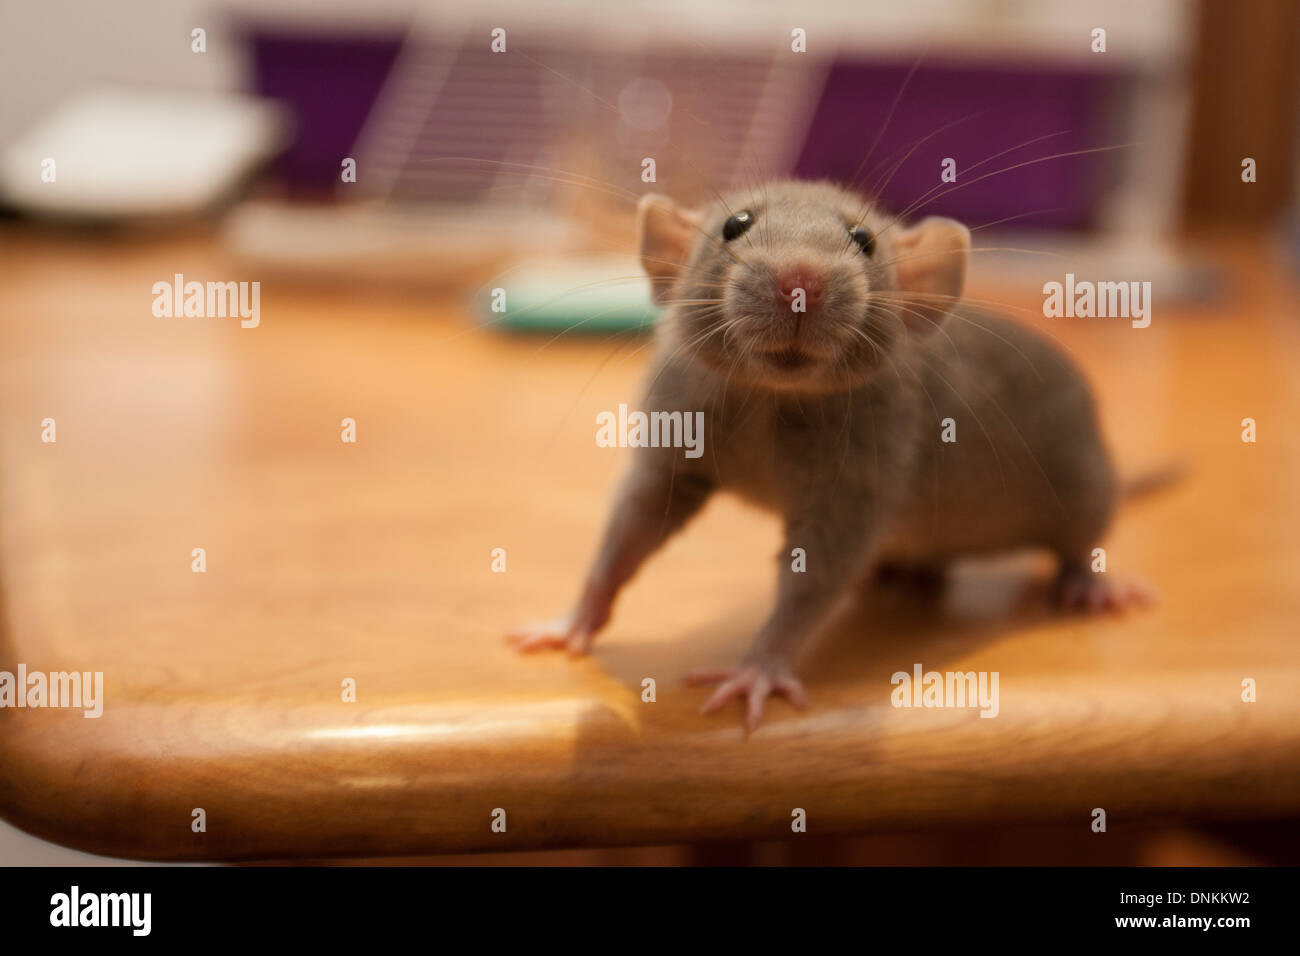 Haustier Ratte auf Tisch Stockfotografie - Alamy